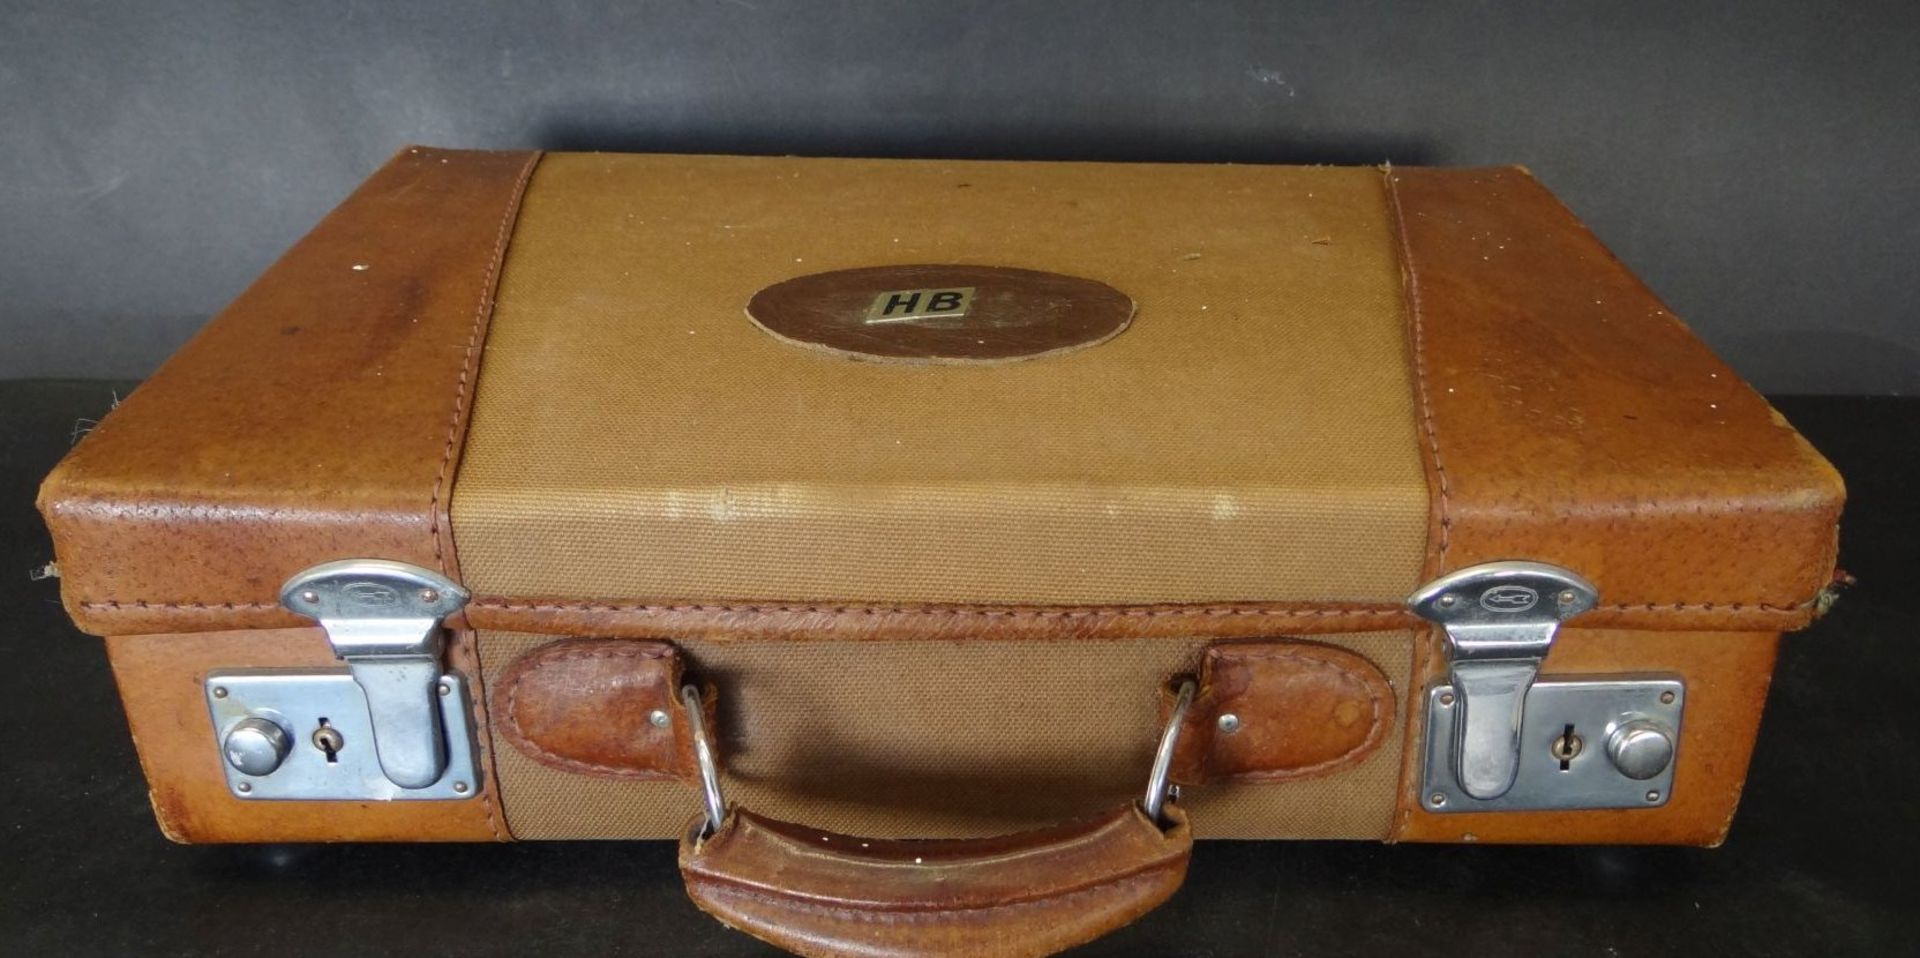 kl. Leder-Handkoffer "Ann Christin", mttiig Stoff, 36x24 cm, Alters-u. Gebrauchsspuren